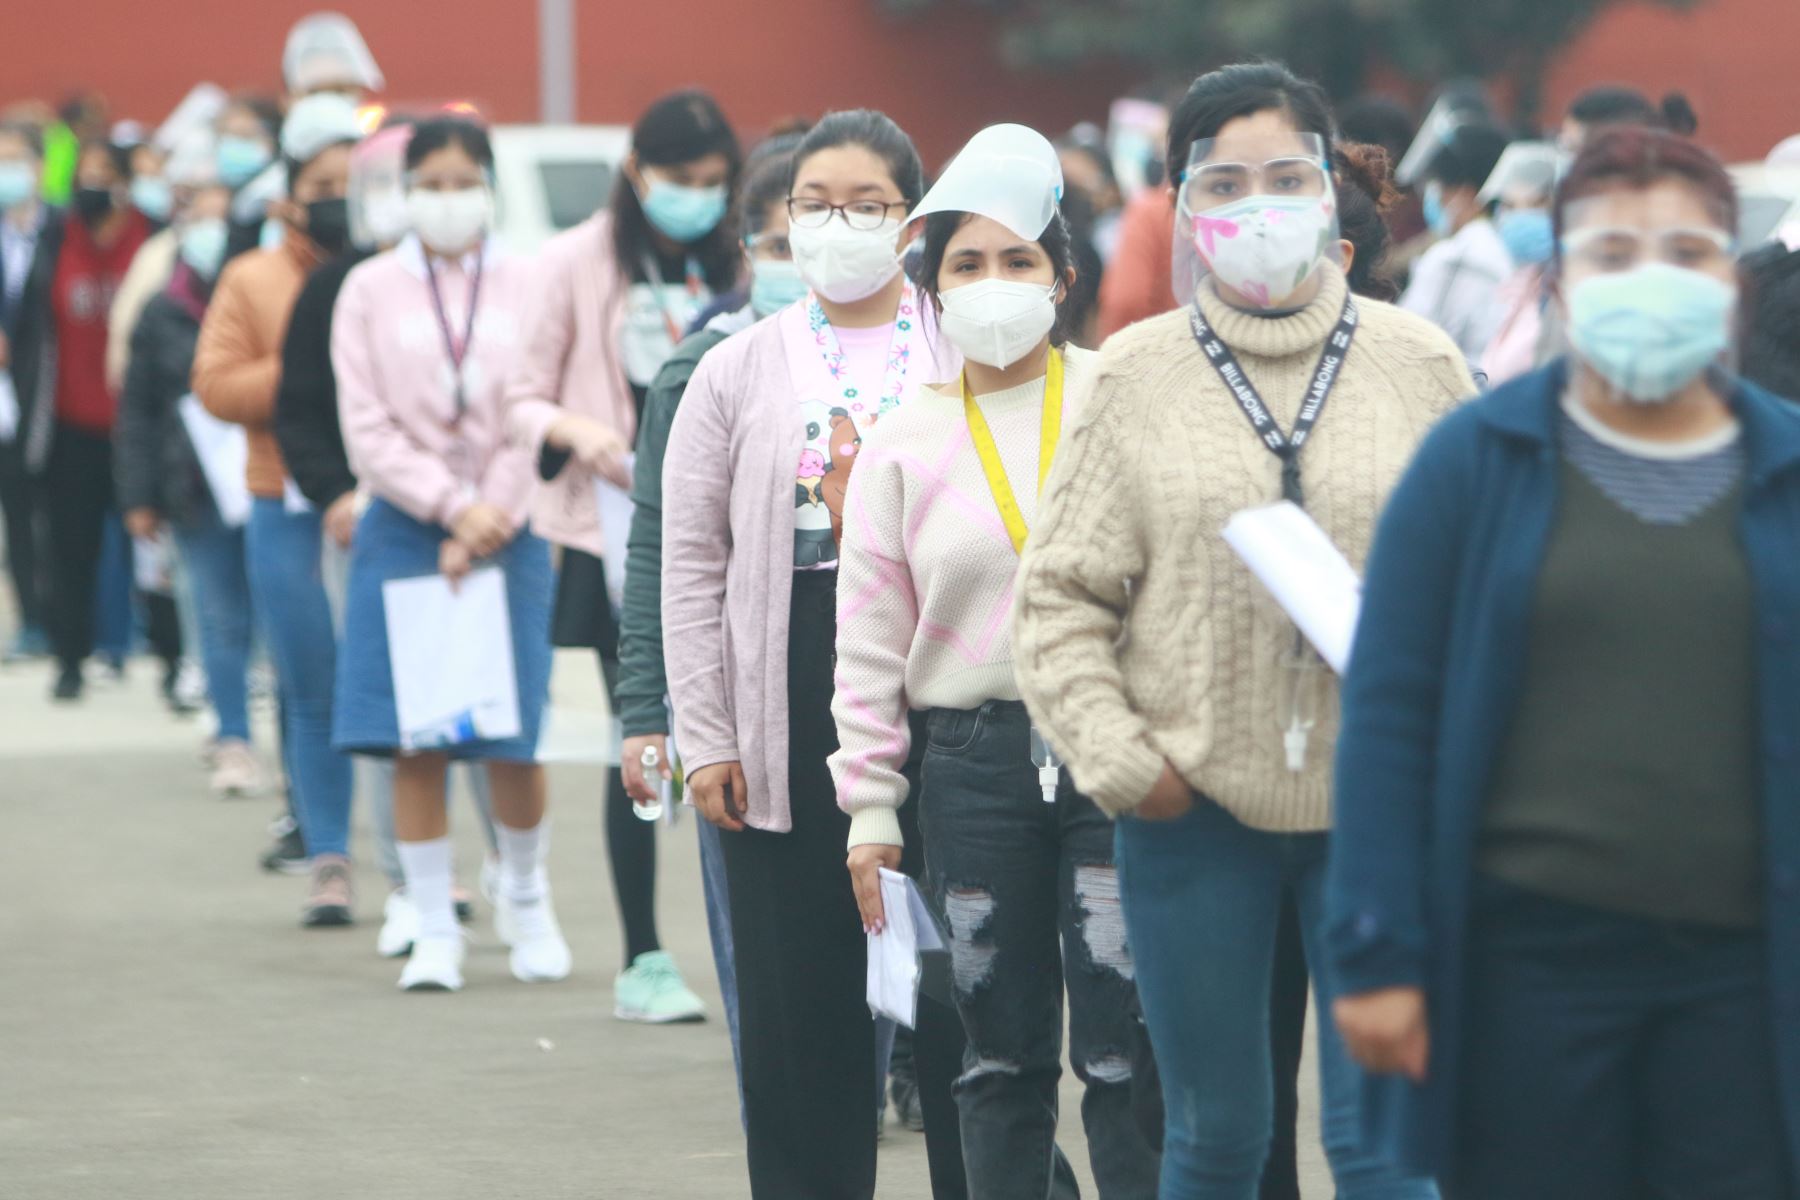 Postulantes a la UNMSM rinden primer examen de admisión acatando medidas de bioseguridad frente a la pandemia. Foto: ANDINA/Jhonel Rodríguez